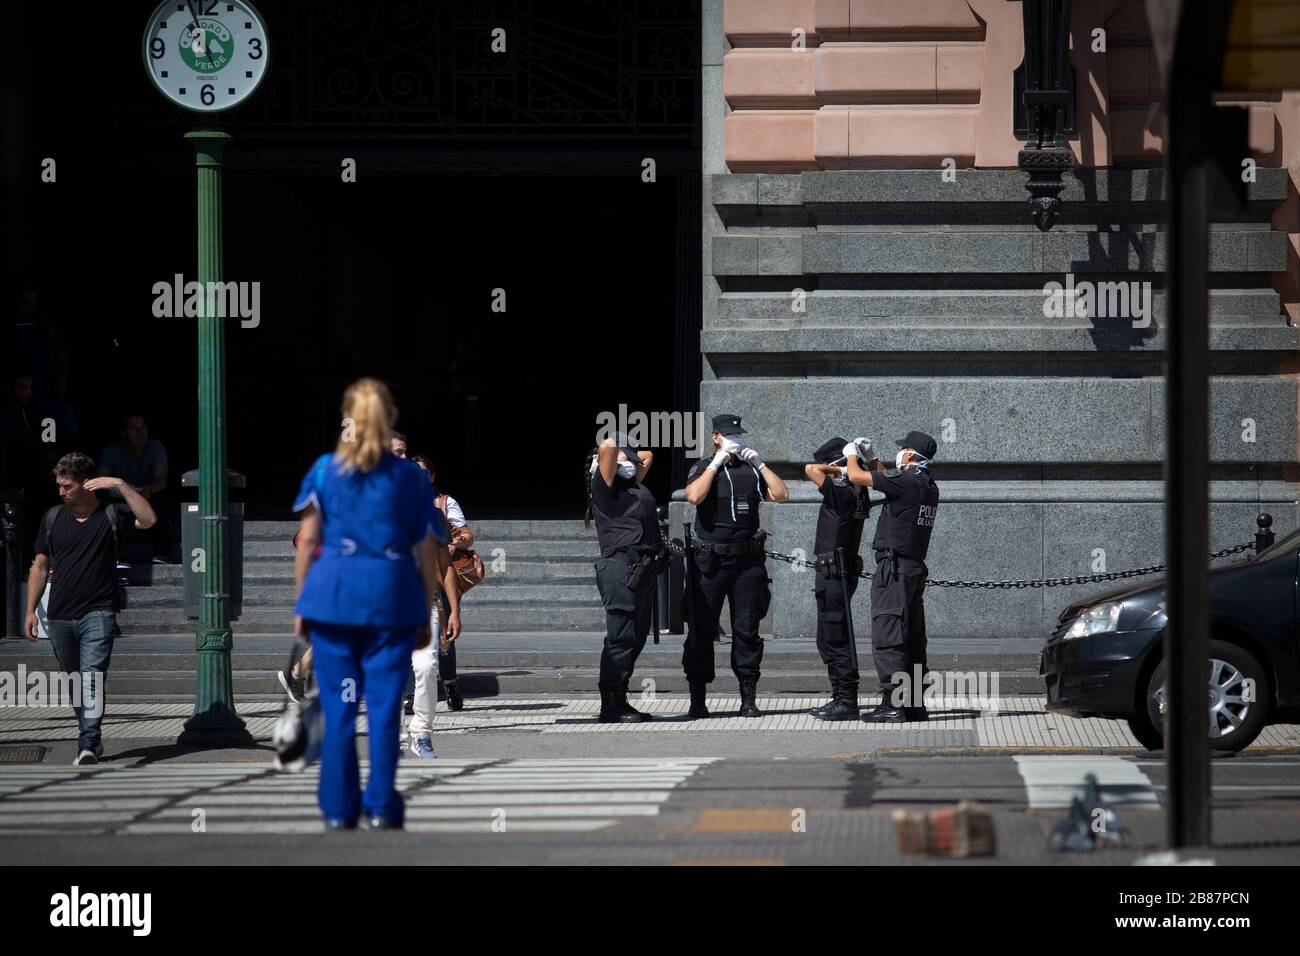 Buenos Aires, Argentinien - 20. März 2020: Die Polizei stellt die Kinnschutzmasken am Tag nach dem Ausnahmezustand in Buenos AIRES aufeinander Stockfoto